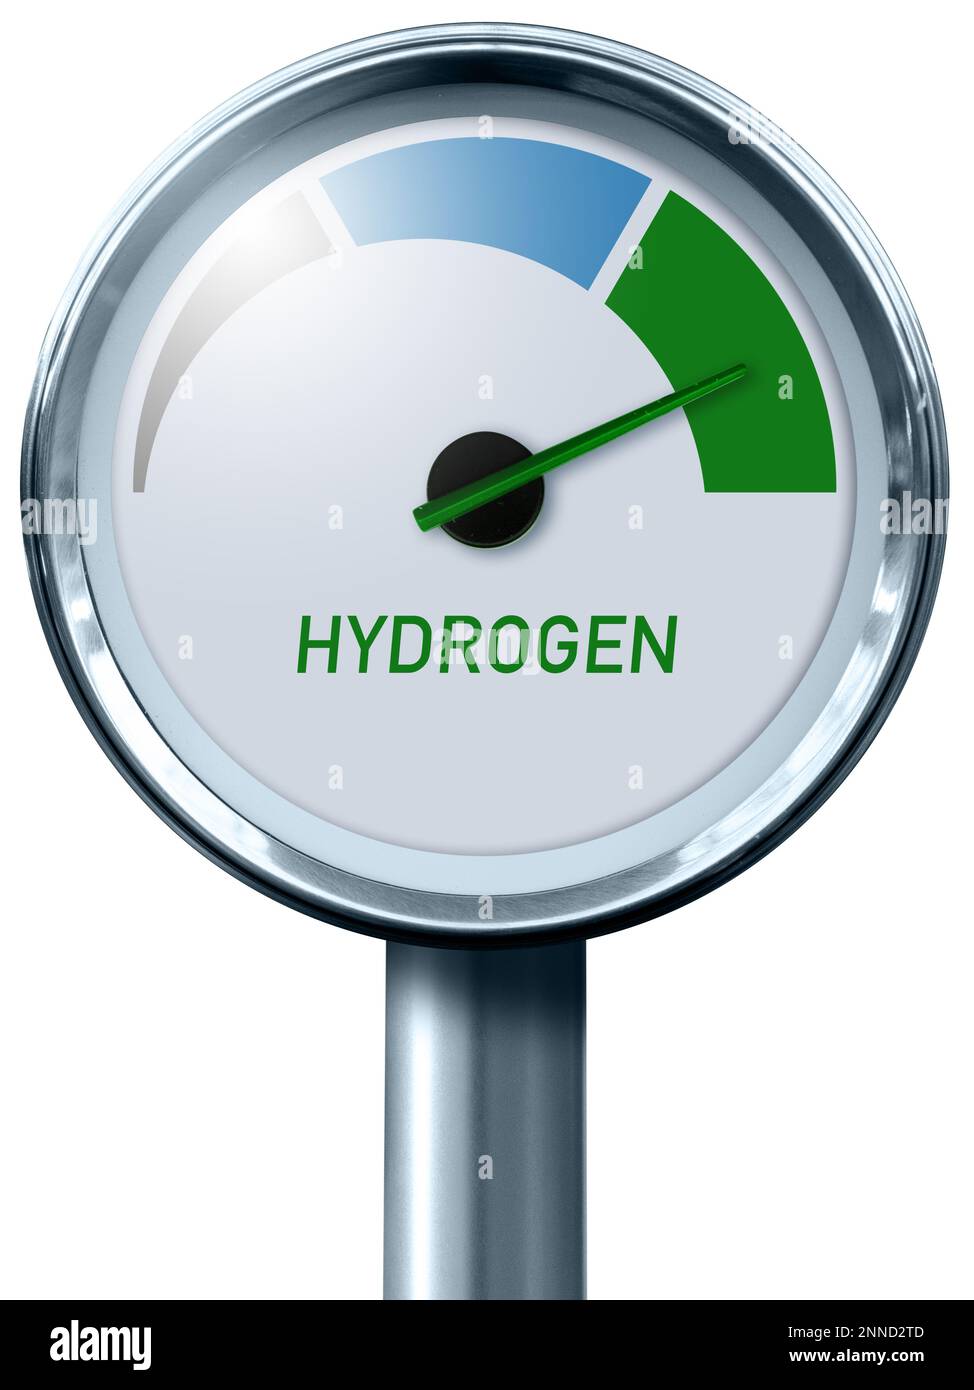 Indicador de hidrógeno con colores de árbol - gris, azul y verde. Concepto de producción de hidrógeno verde Foto de stock